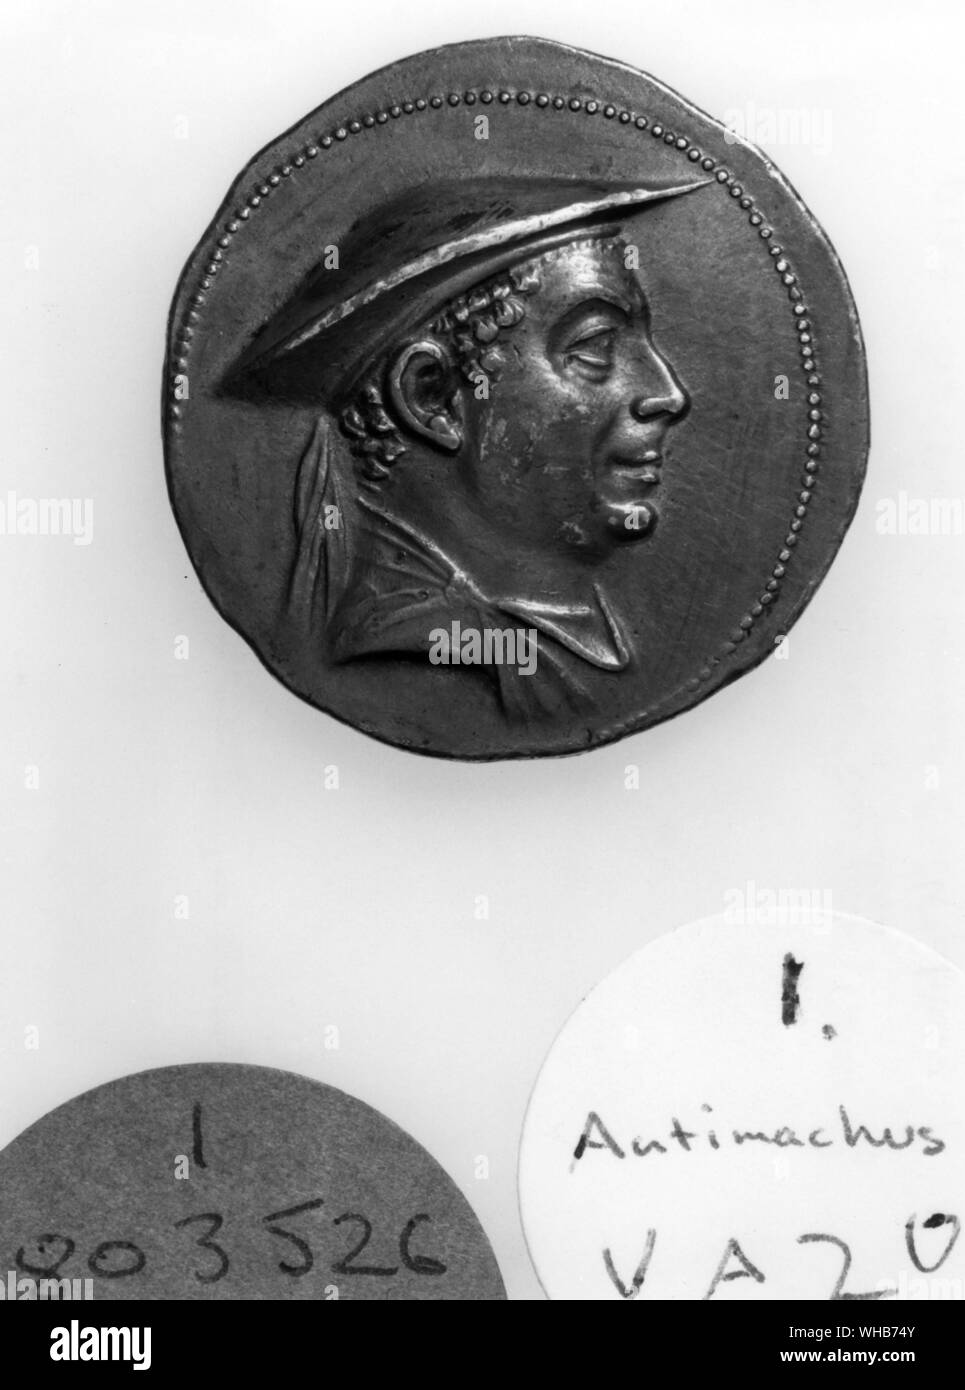 Moneta di un righello Graeco-Bactrian di nord-ovest dell'India - moneta d'argento di Antimachus I (171-160 a.C.). Anthimachus mi è stato uno dei re Greco-Bactrian da circa 185 a 170 BC.. Obv: Busto di Antimachus I.. Rev: (qui non mostrato) Rappresentazione di Poseidon, con legenda greca BASILEOS TEOU ANTIMACHOU God-King Antimachus -. Il Regno Greco-Bactrian (o Graeco-Bactrian unito) coperte le aree di Battriana e Sogdiana, comprendente odierna Afghanistan settentrionale e parti dell Asia centrale, la zona più orientale del mondo ellenistico, da 250 a 125 a.e.v.. L'espansione del Greco-Bactrians nella parte settentrionale Foto Stock